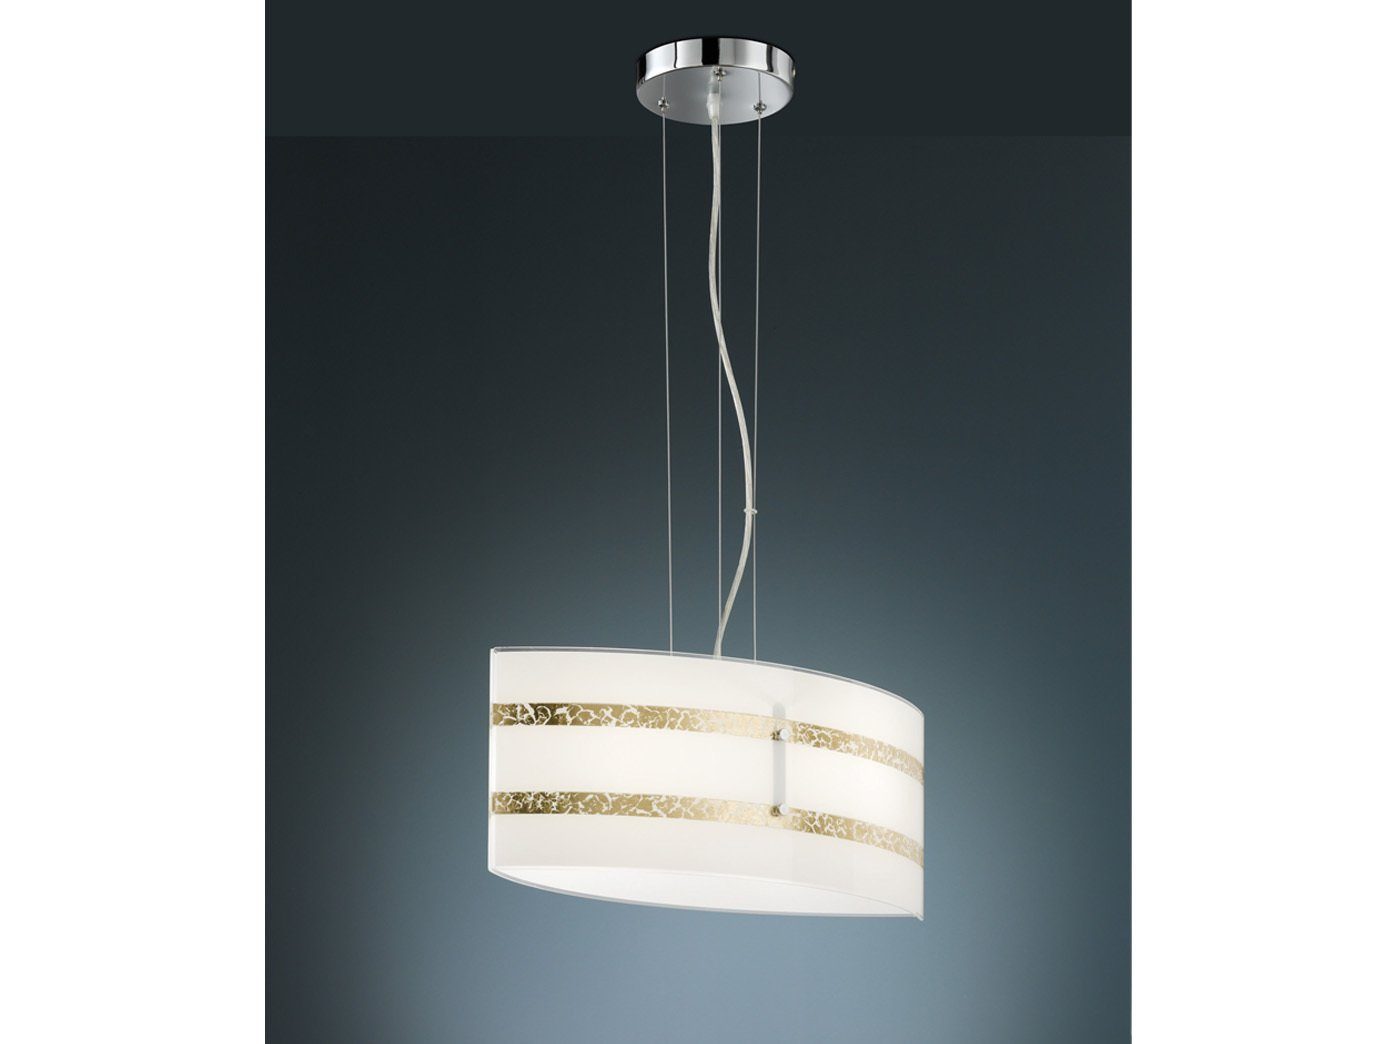 LED Decken Pendel Leuchte silber Wohn Zimmer Switch Dimmer Design Hänge Lampe 